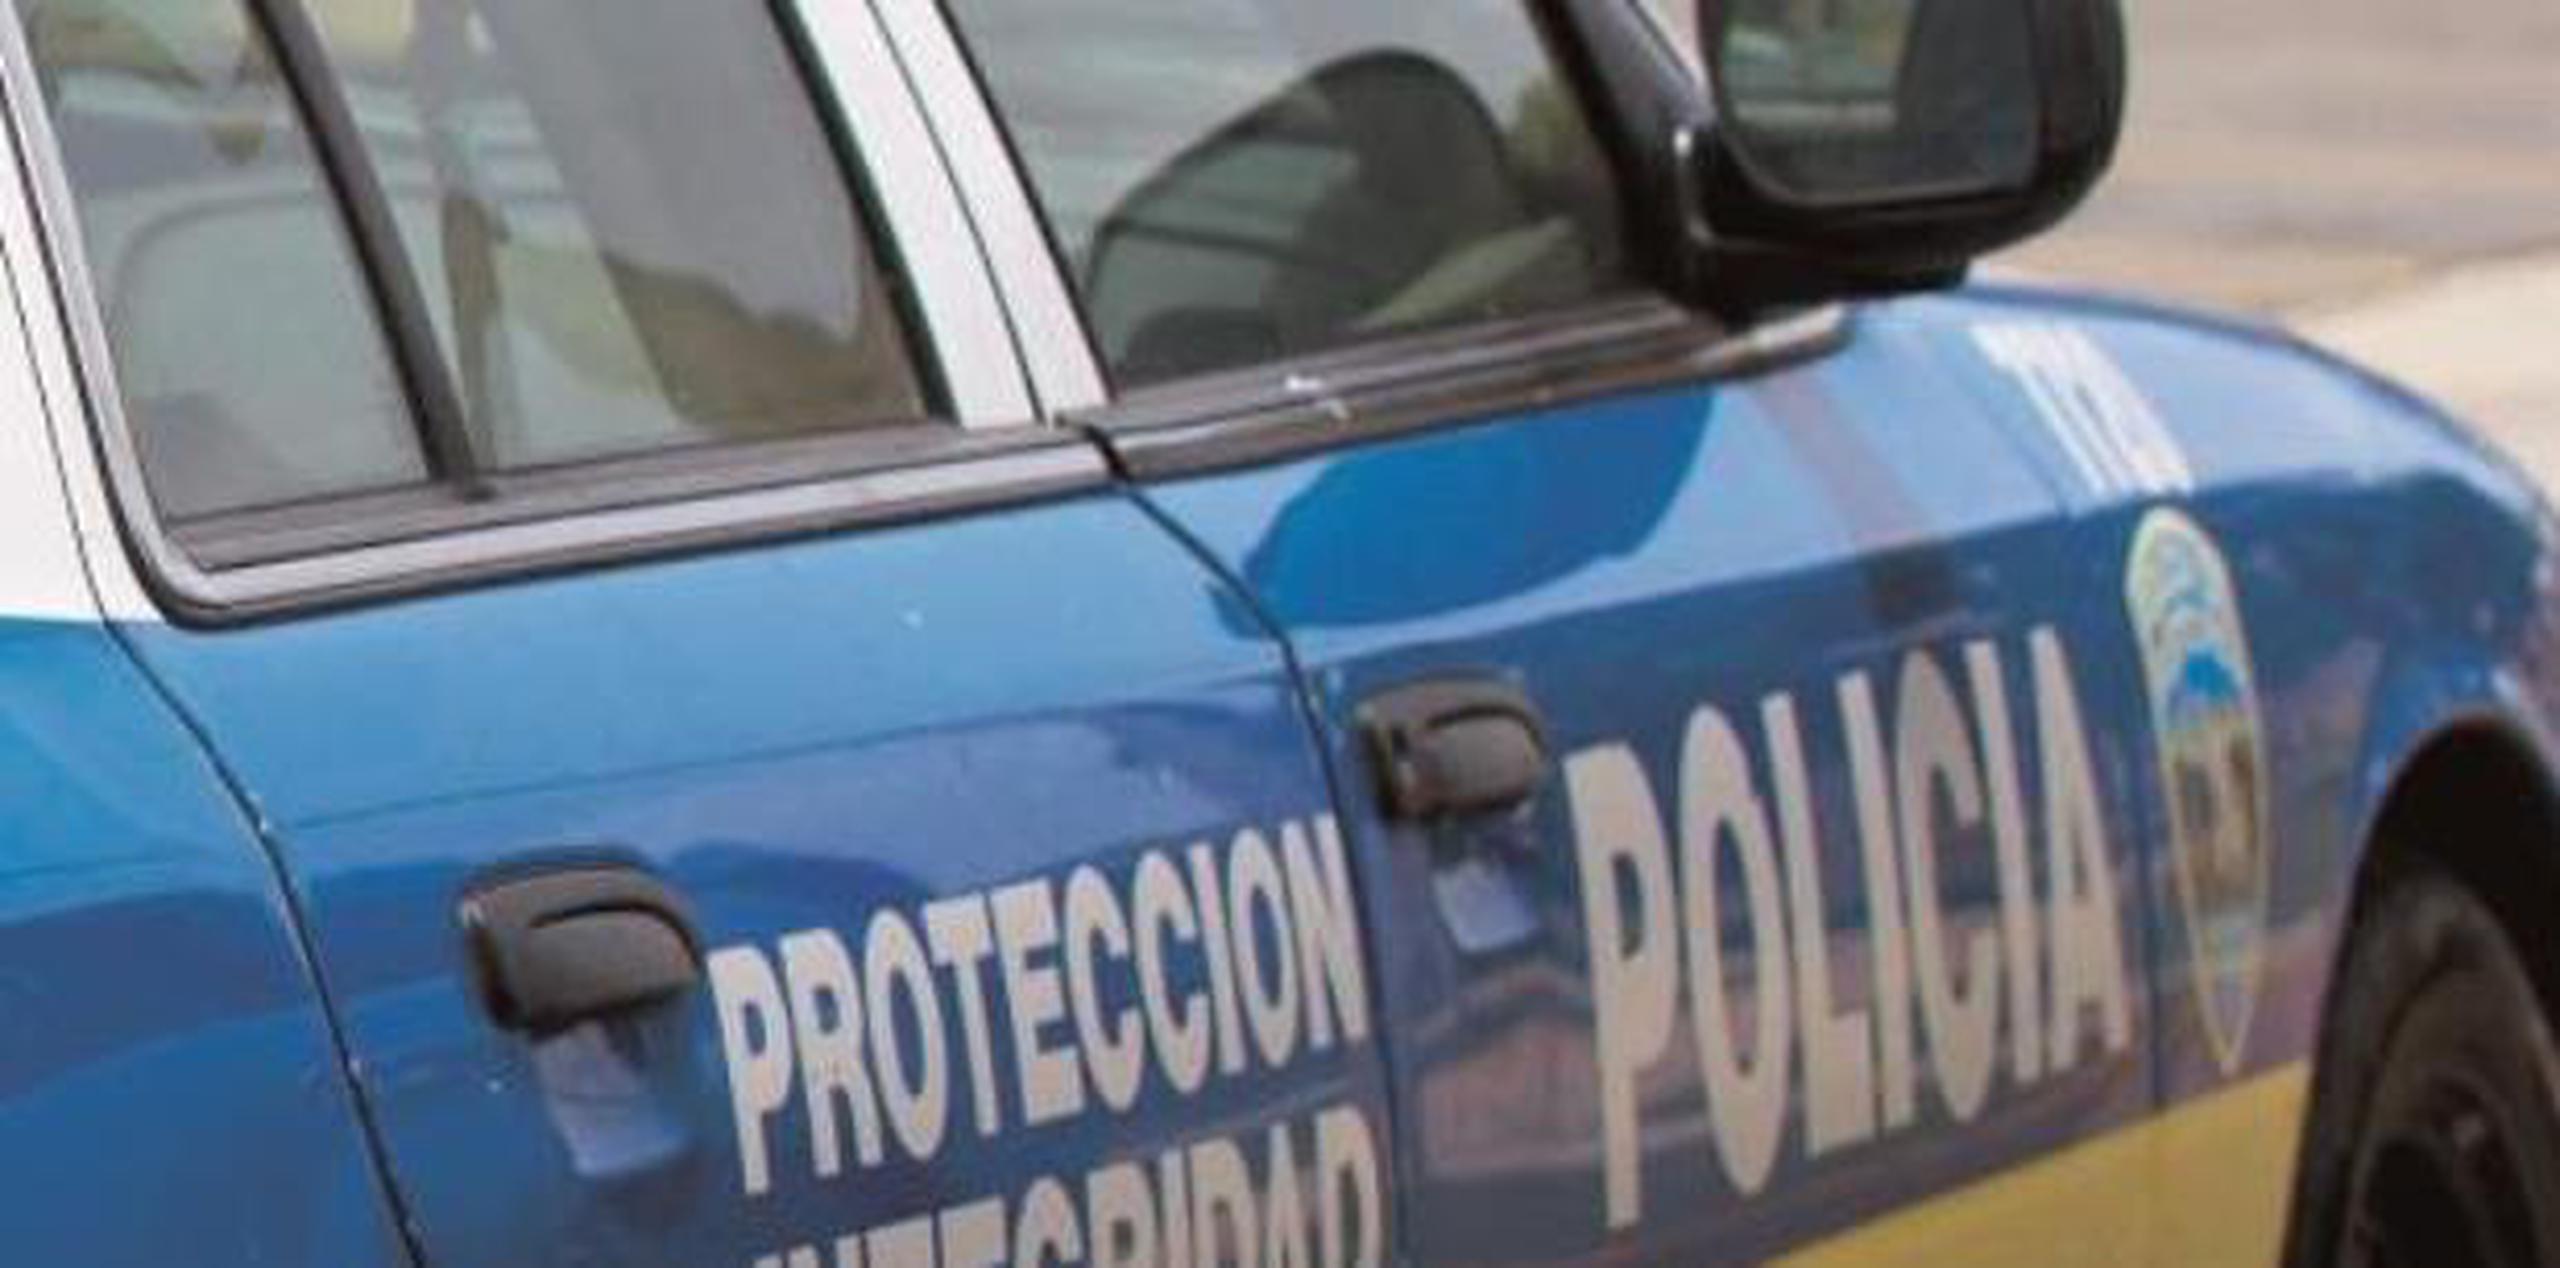 El agente Sergio Ares, adscrito a la División de Patrullas de Carreteras de Humacao junto al fiscal Pedro Anca tienen a cargo la investigación del accidente. (archivo)

